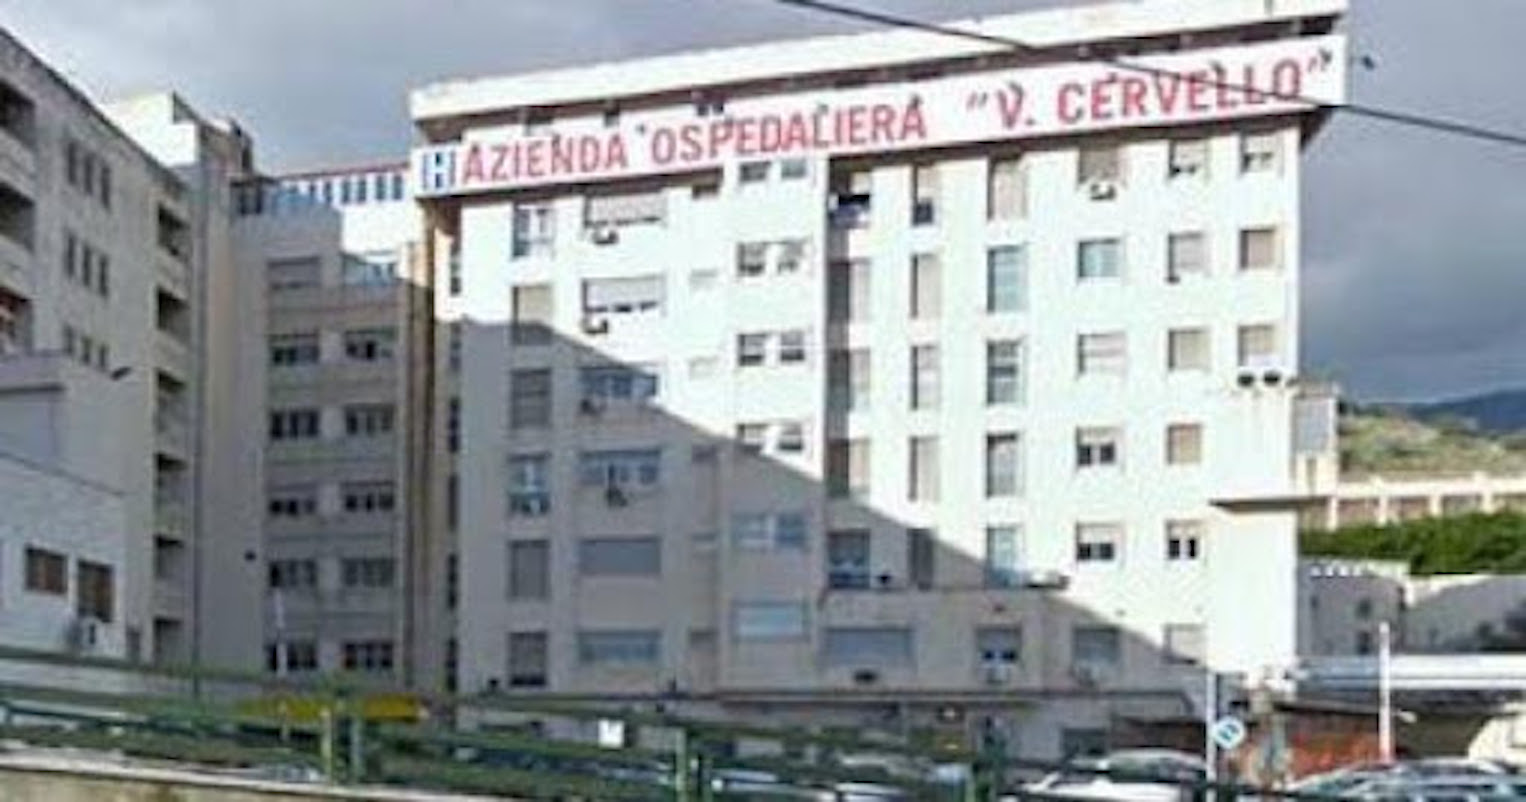 Paziente Covid si suicida in ospedale a Palermo